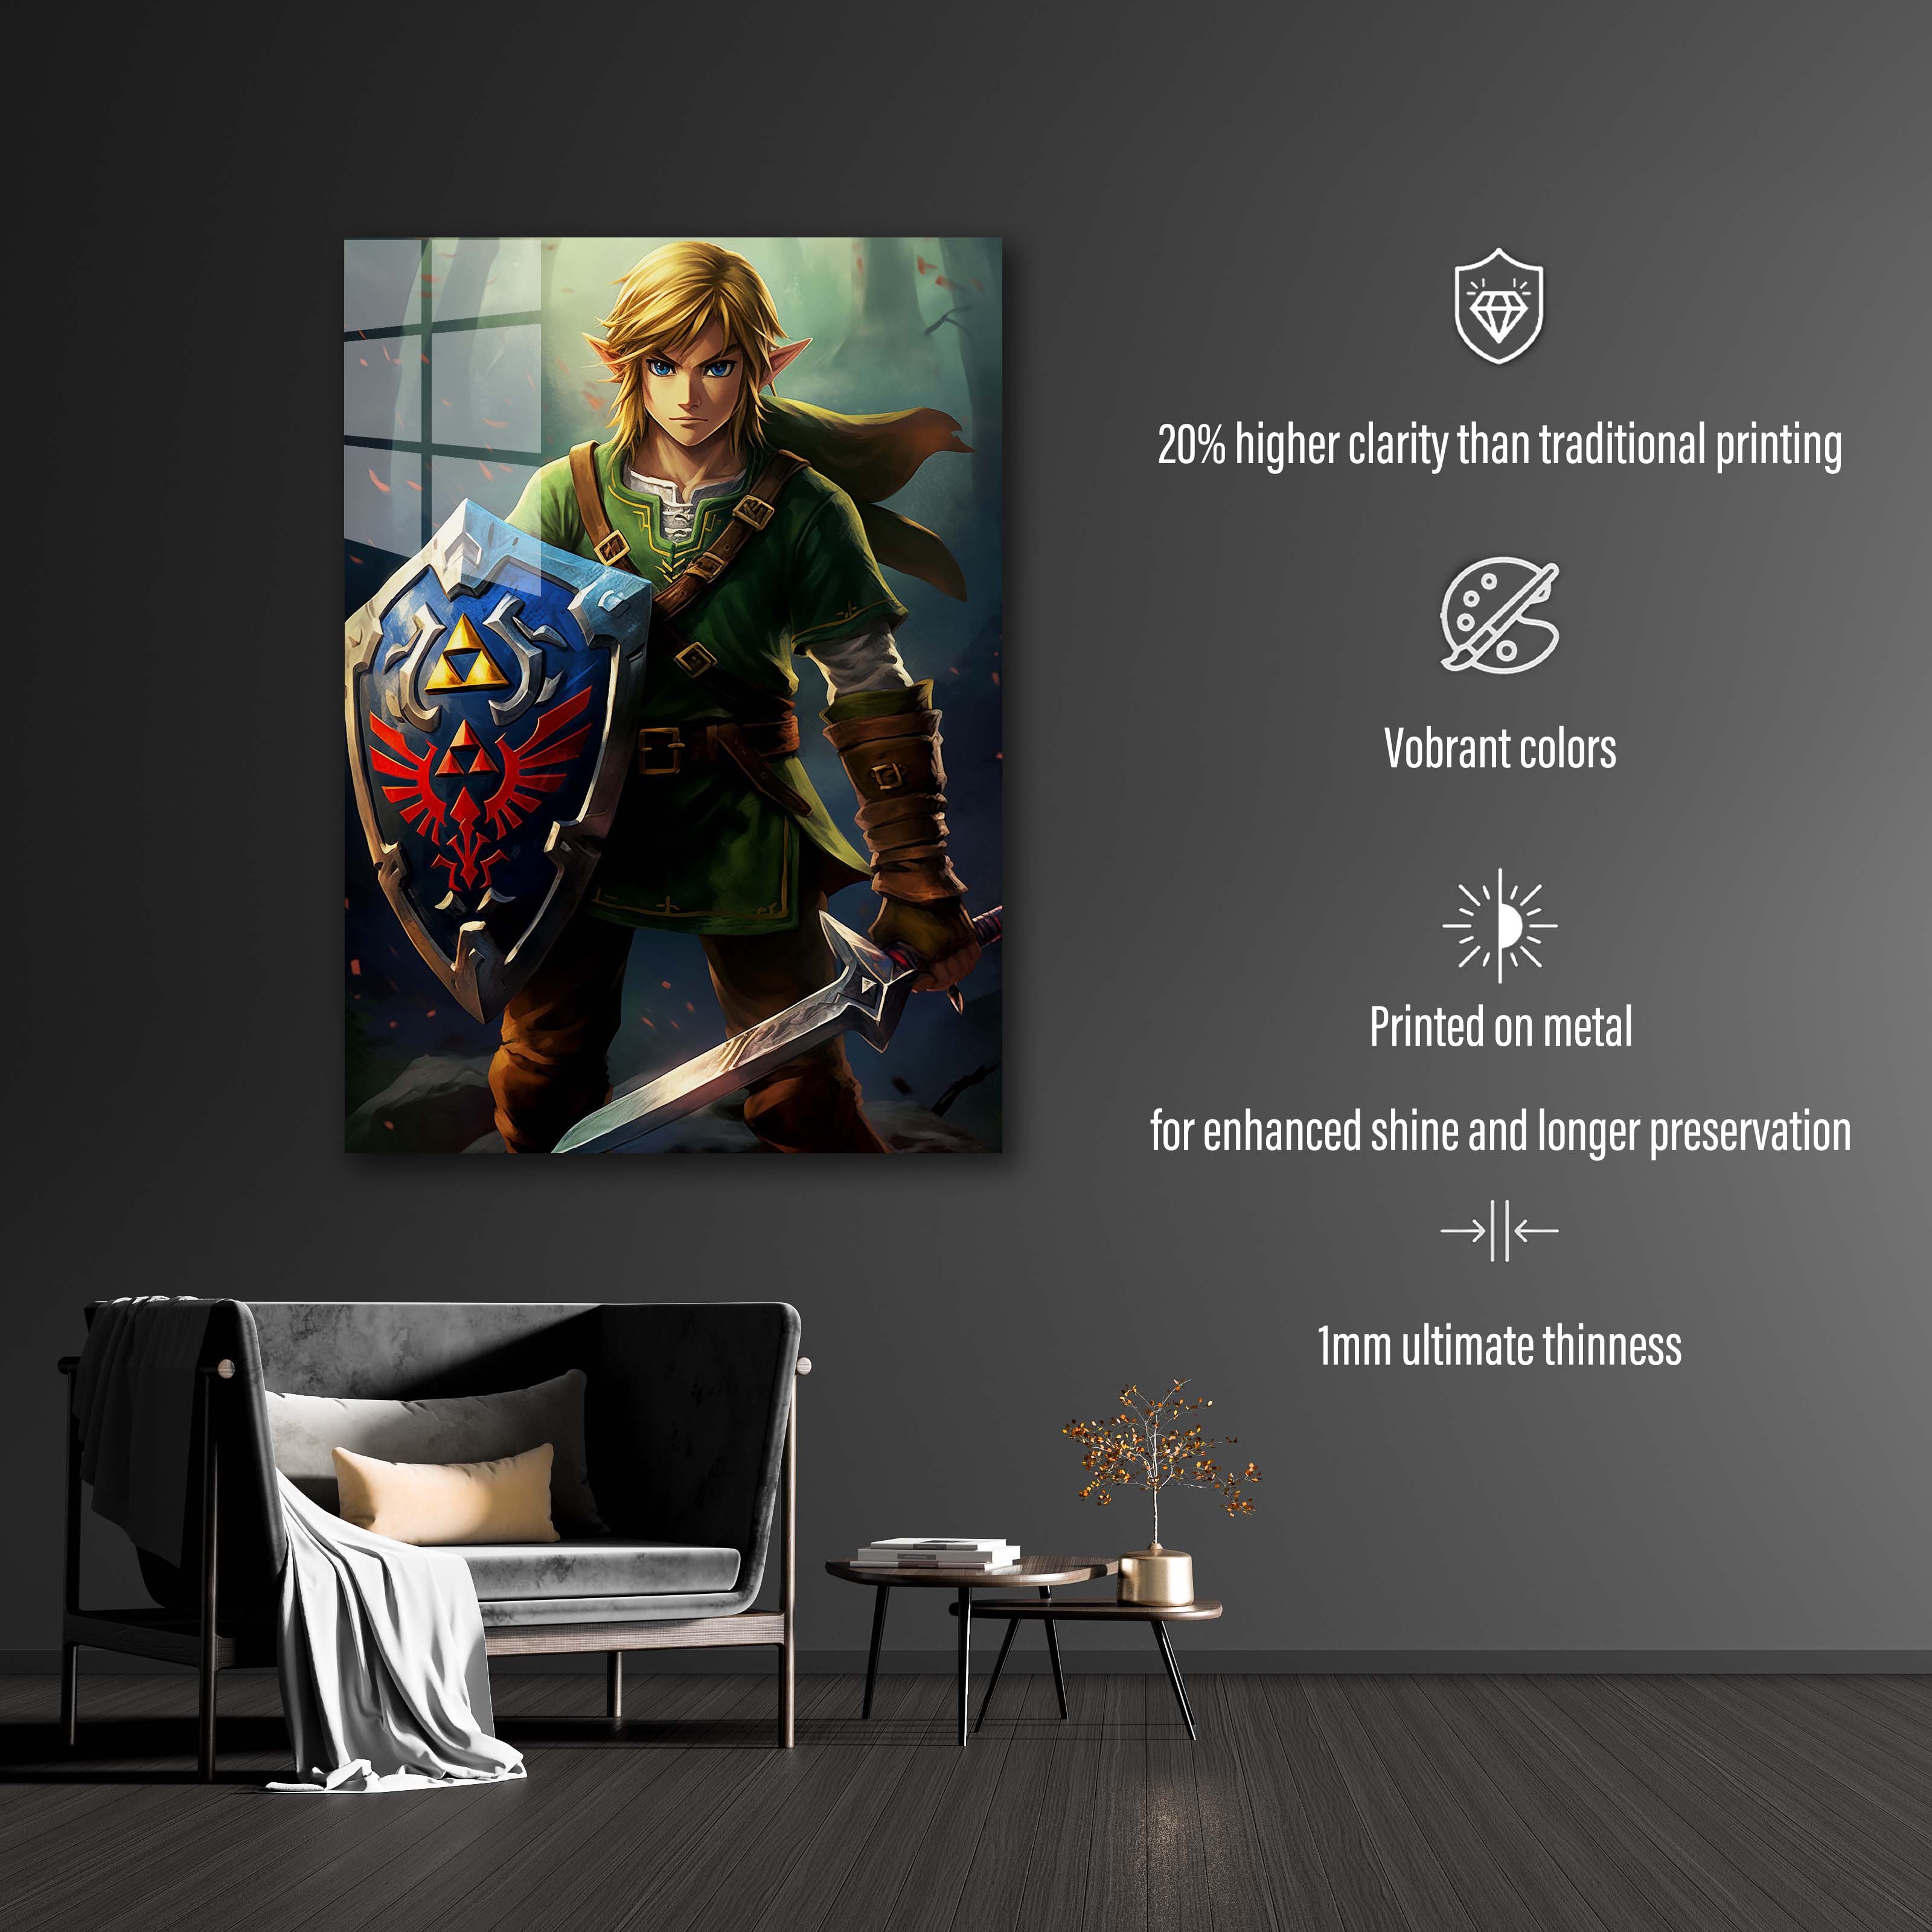 Link Zelda-designed by @Fluency Room